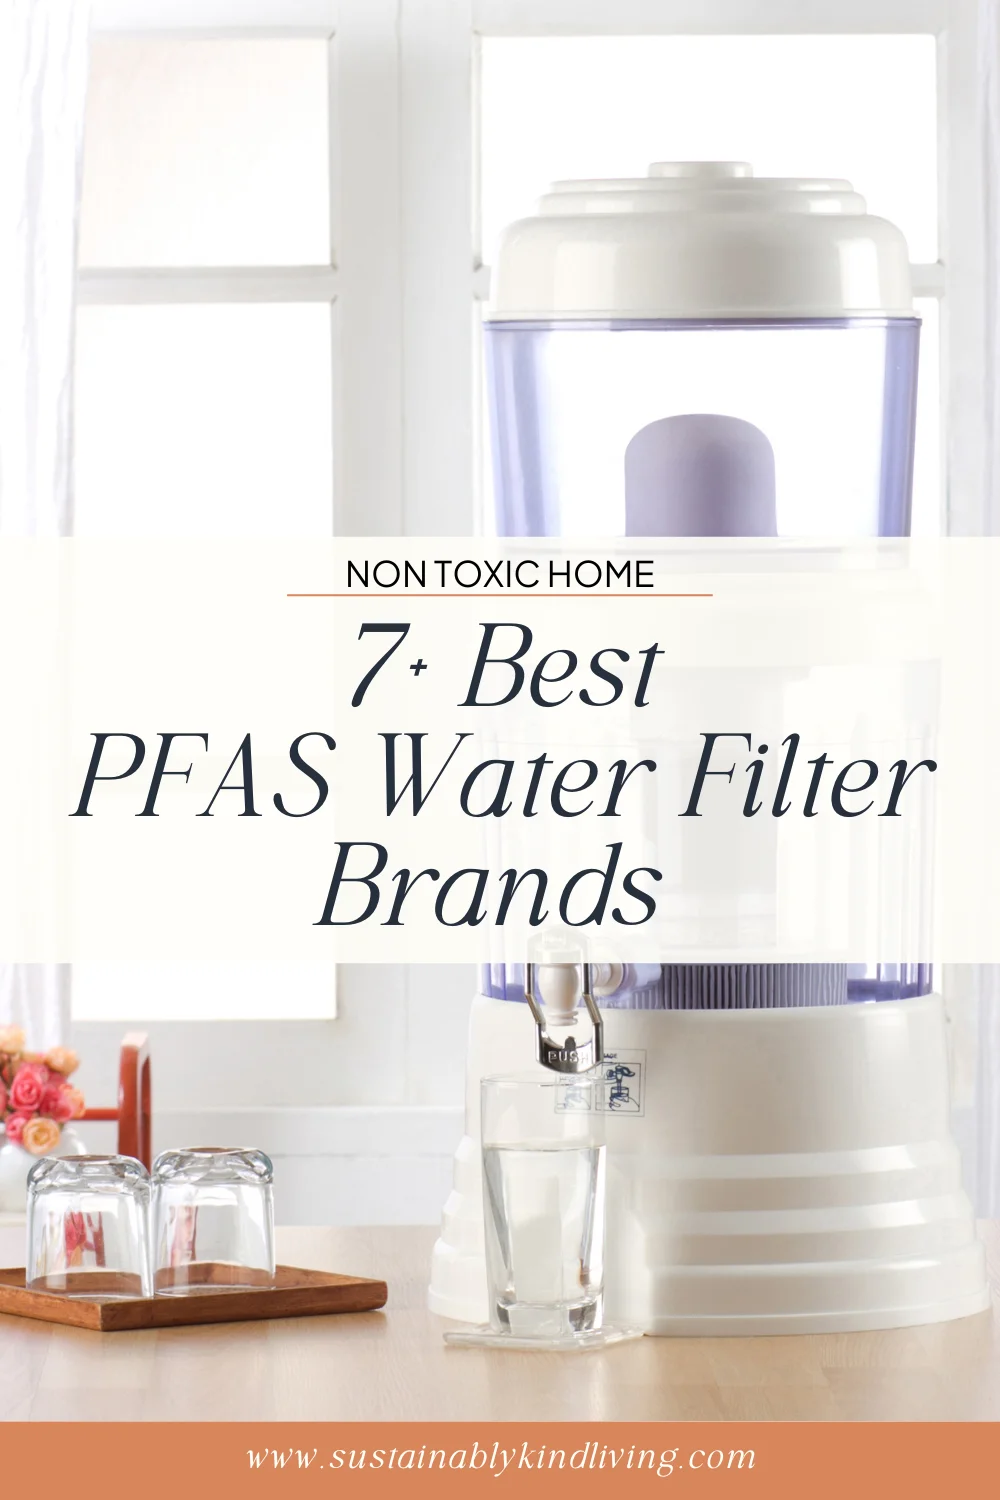 PFAS water filter